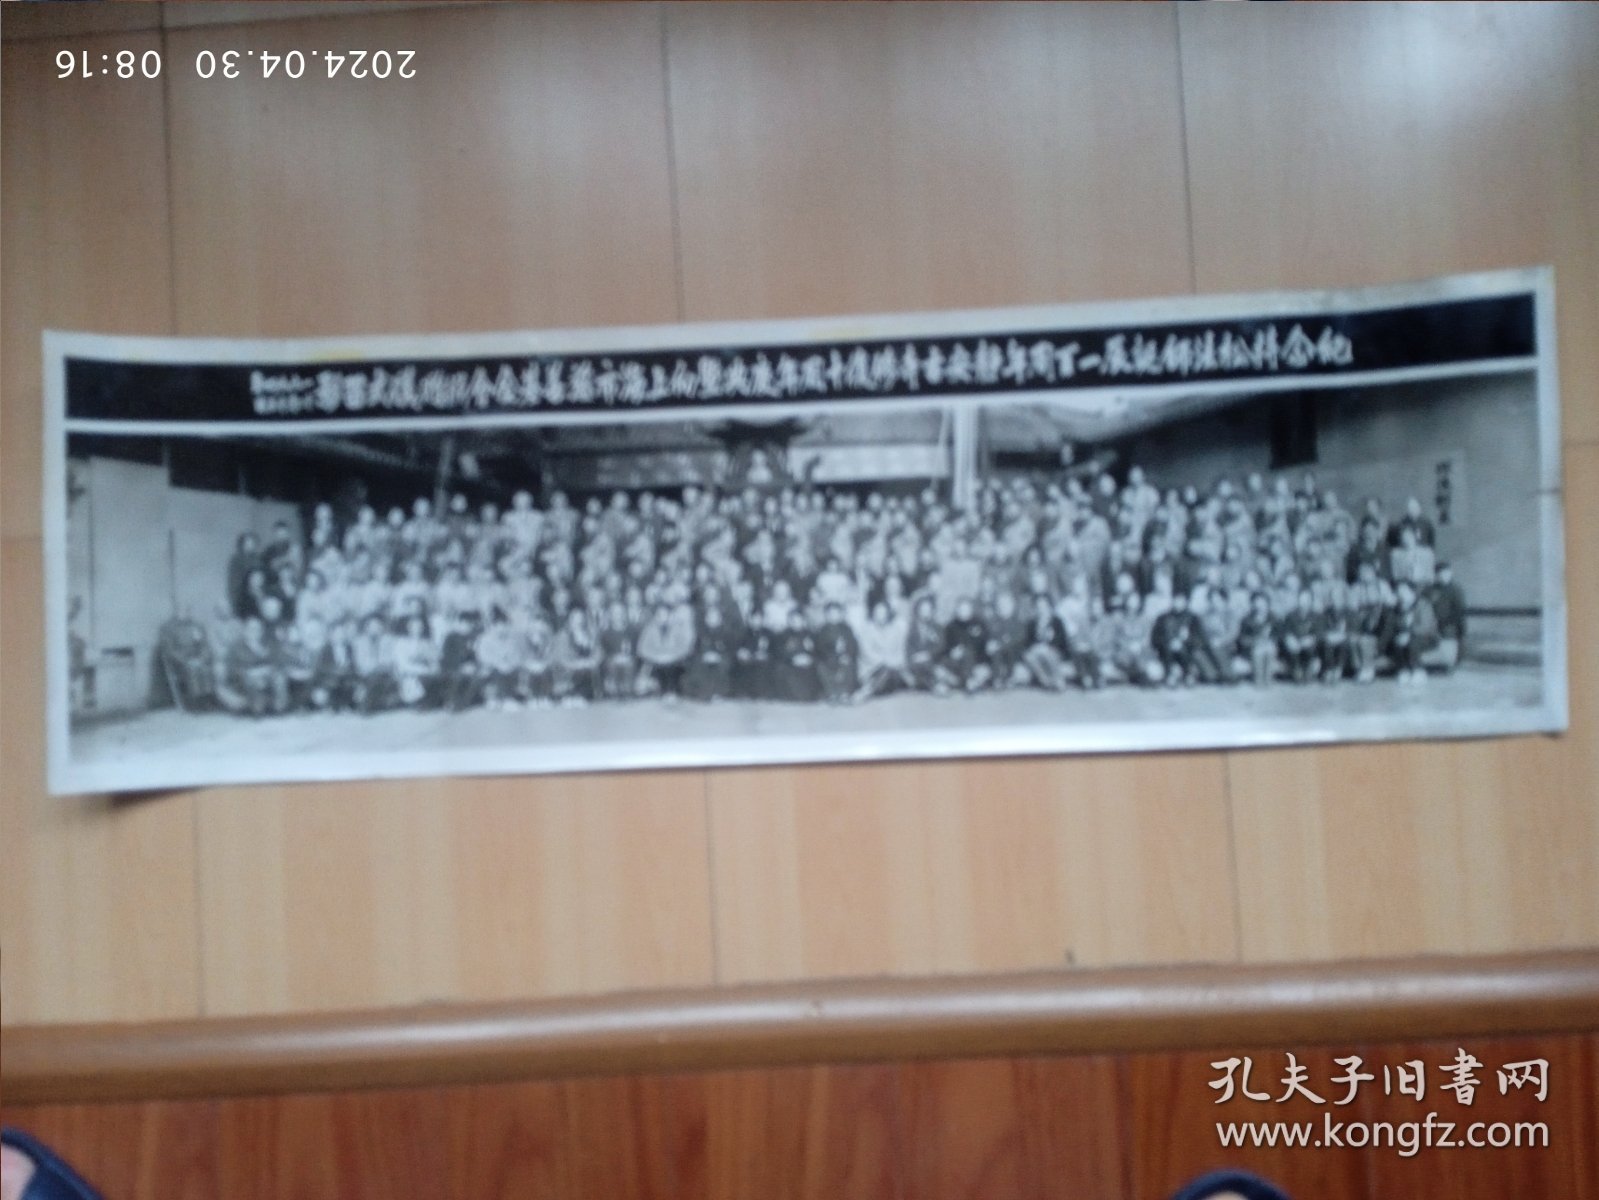 老照片:纪念持松法师诞辰一百周年 静安古寺修复十周年庆典向上海市慈善基金会捐赠仪式留影